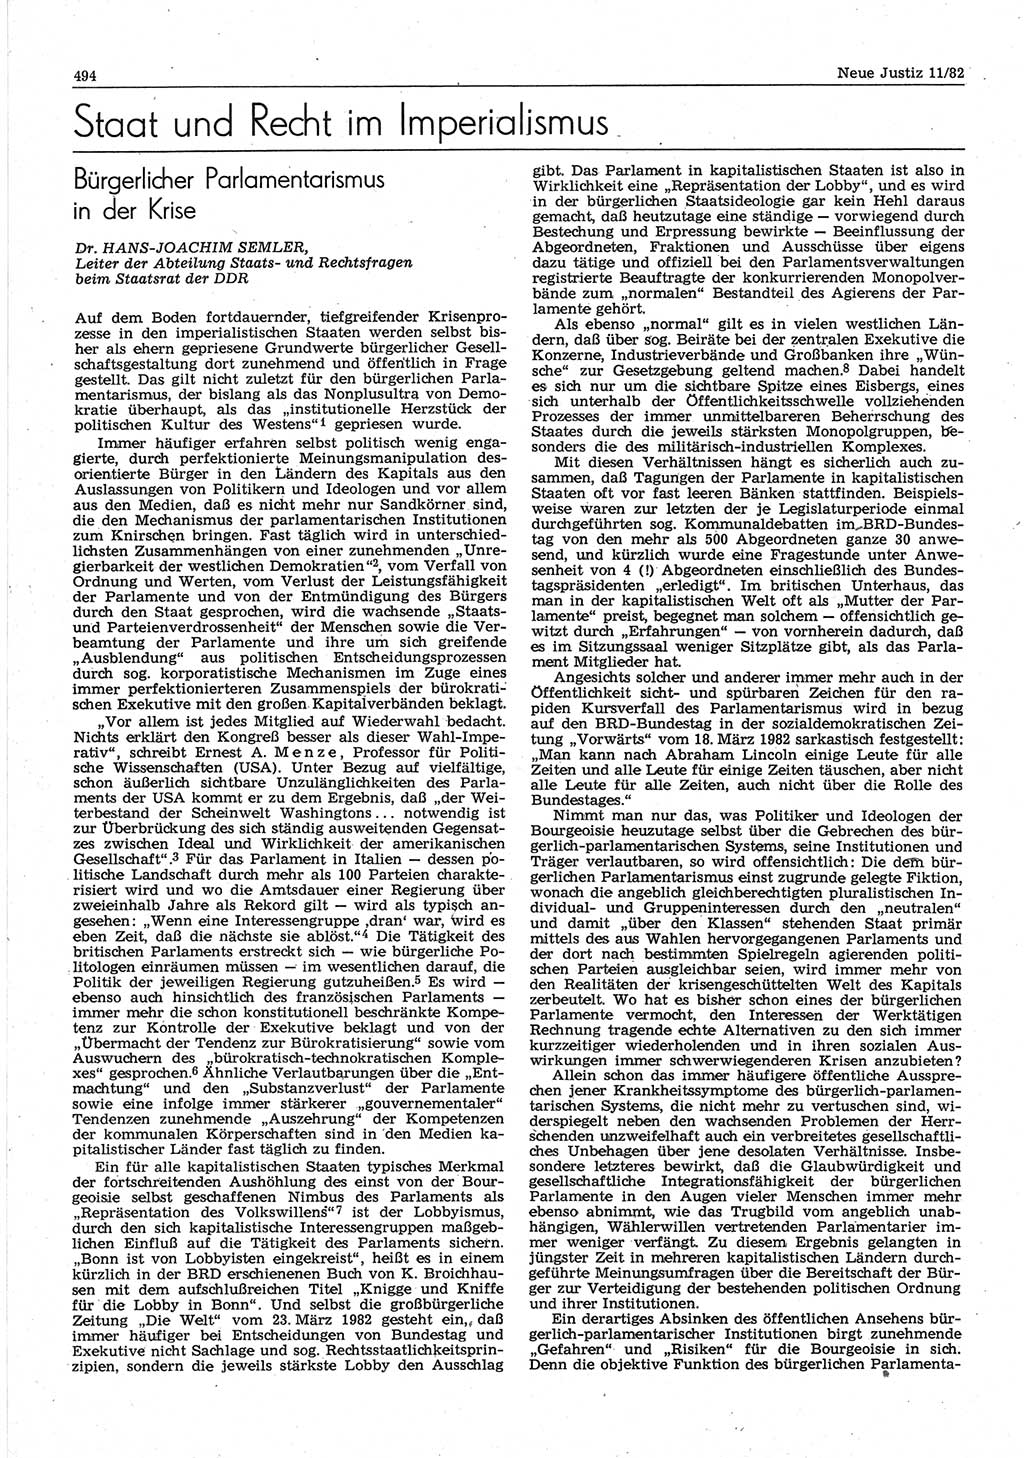 Neue Justiz (NJ), Zeitschrift für sozialistisches Recht und Gesetzlichkeit [Deutsche Demokratische Republik (DDR)], 36. Jahrgang 1982, Seite 494 (NJ DDR 1982, S. 494)